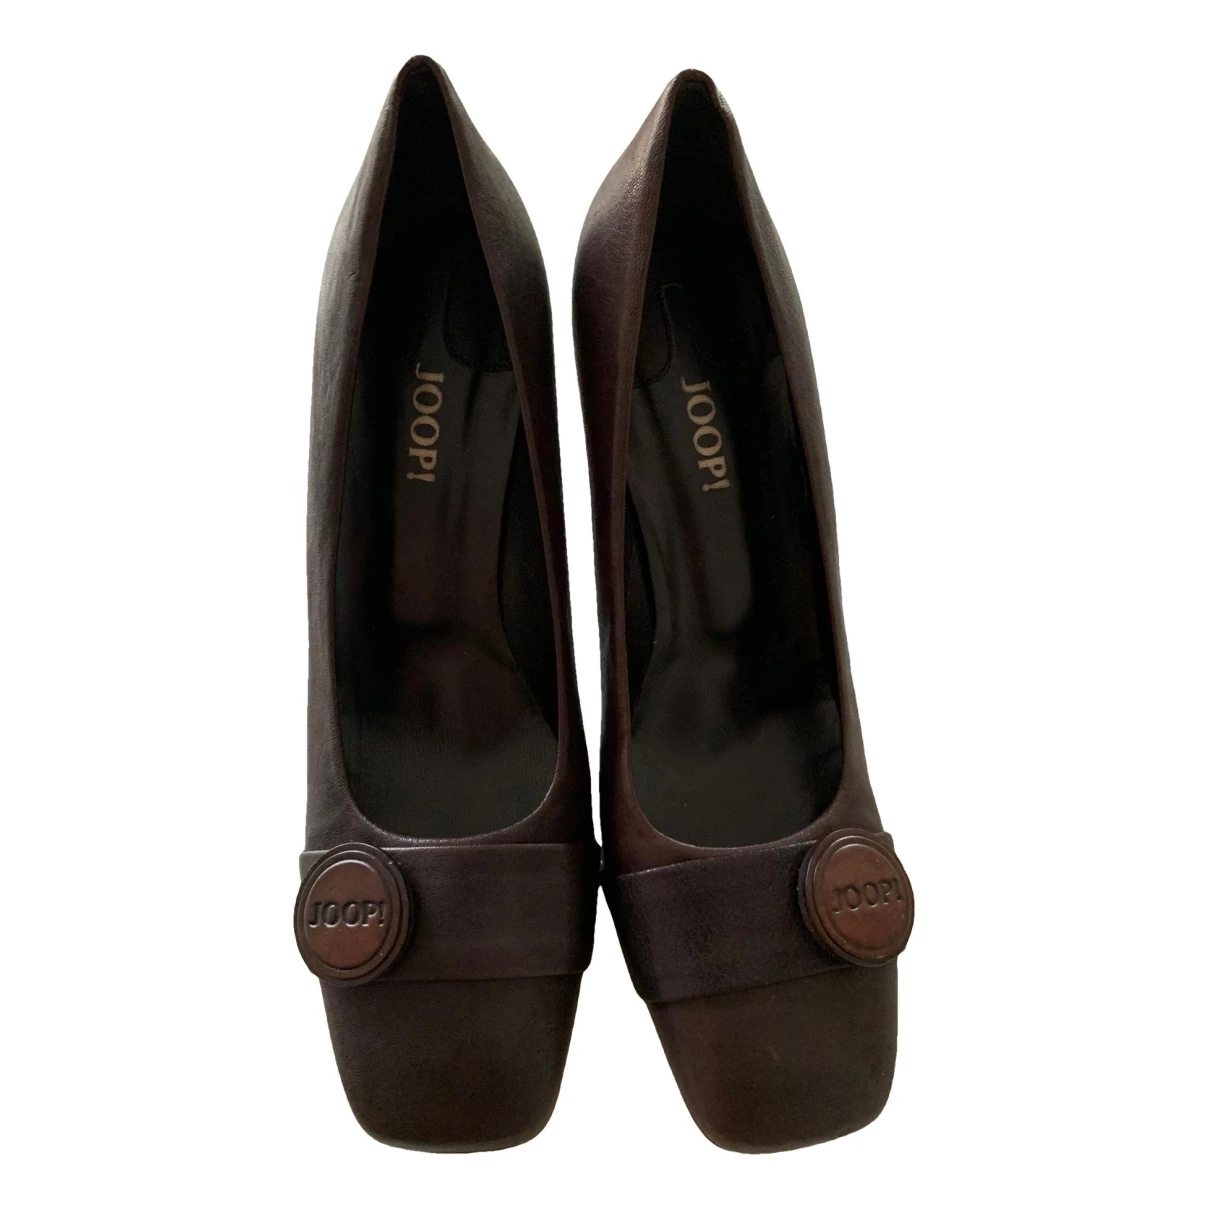 Pre-owned Joop Leather Heels In Brown